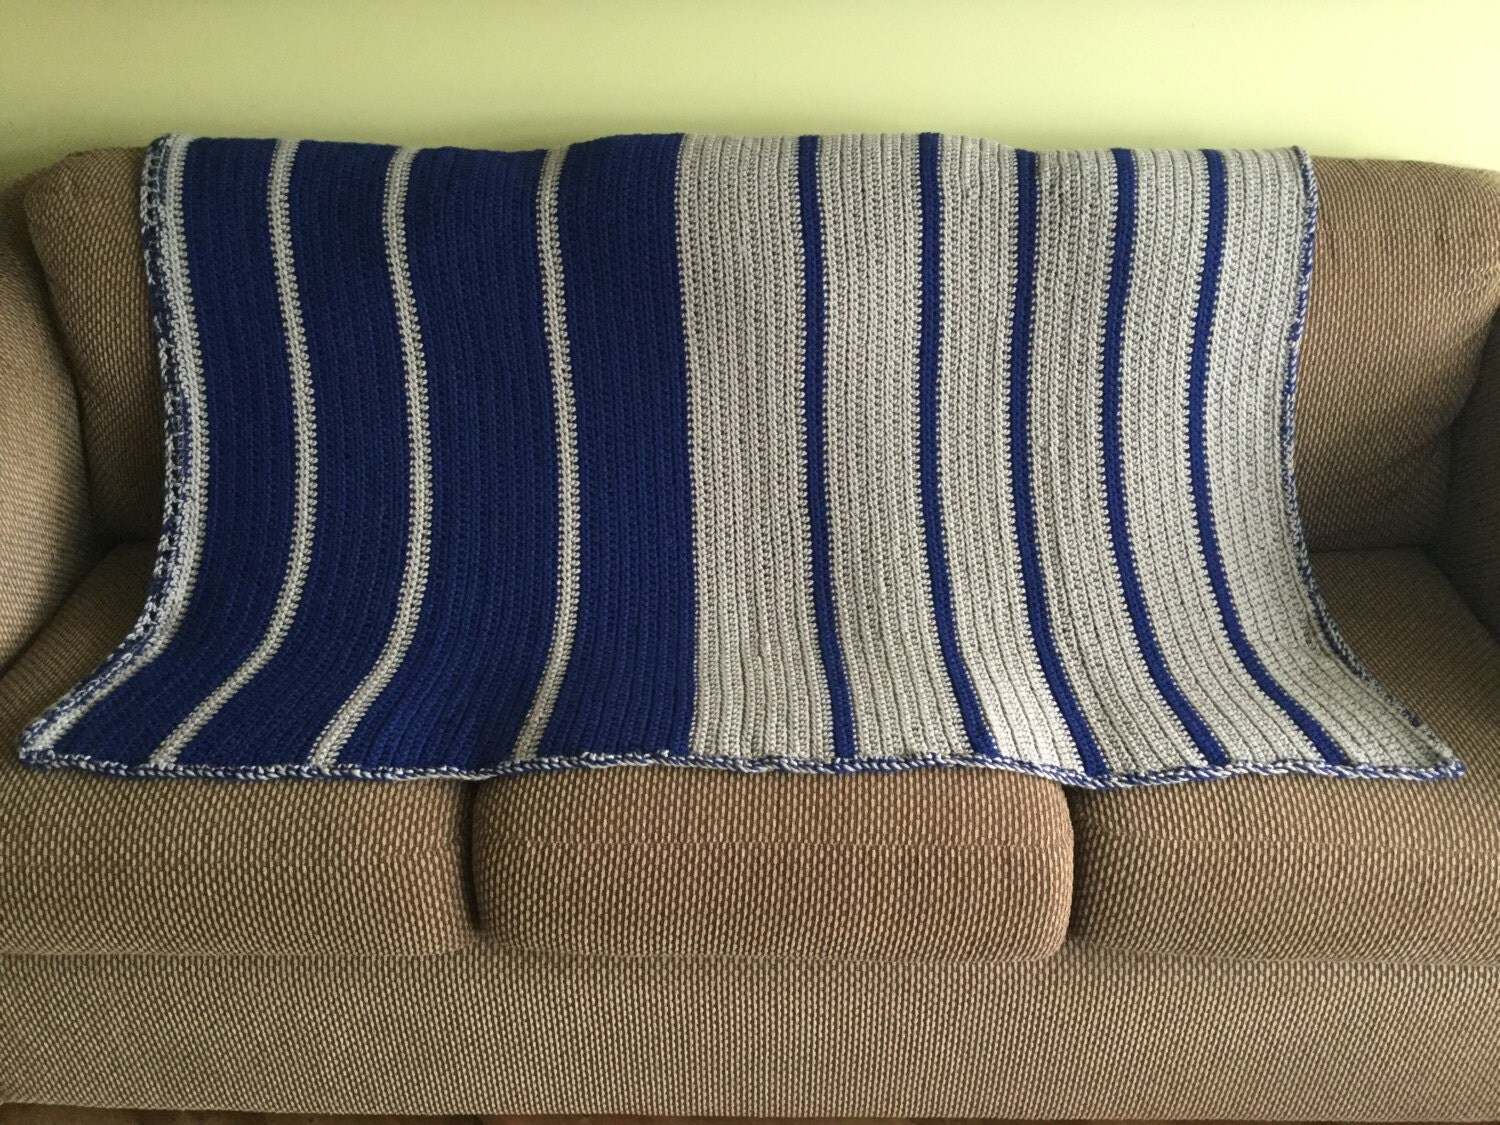 Navy blue and beige afghan handmade crochet throw blanket